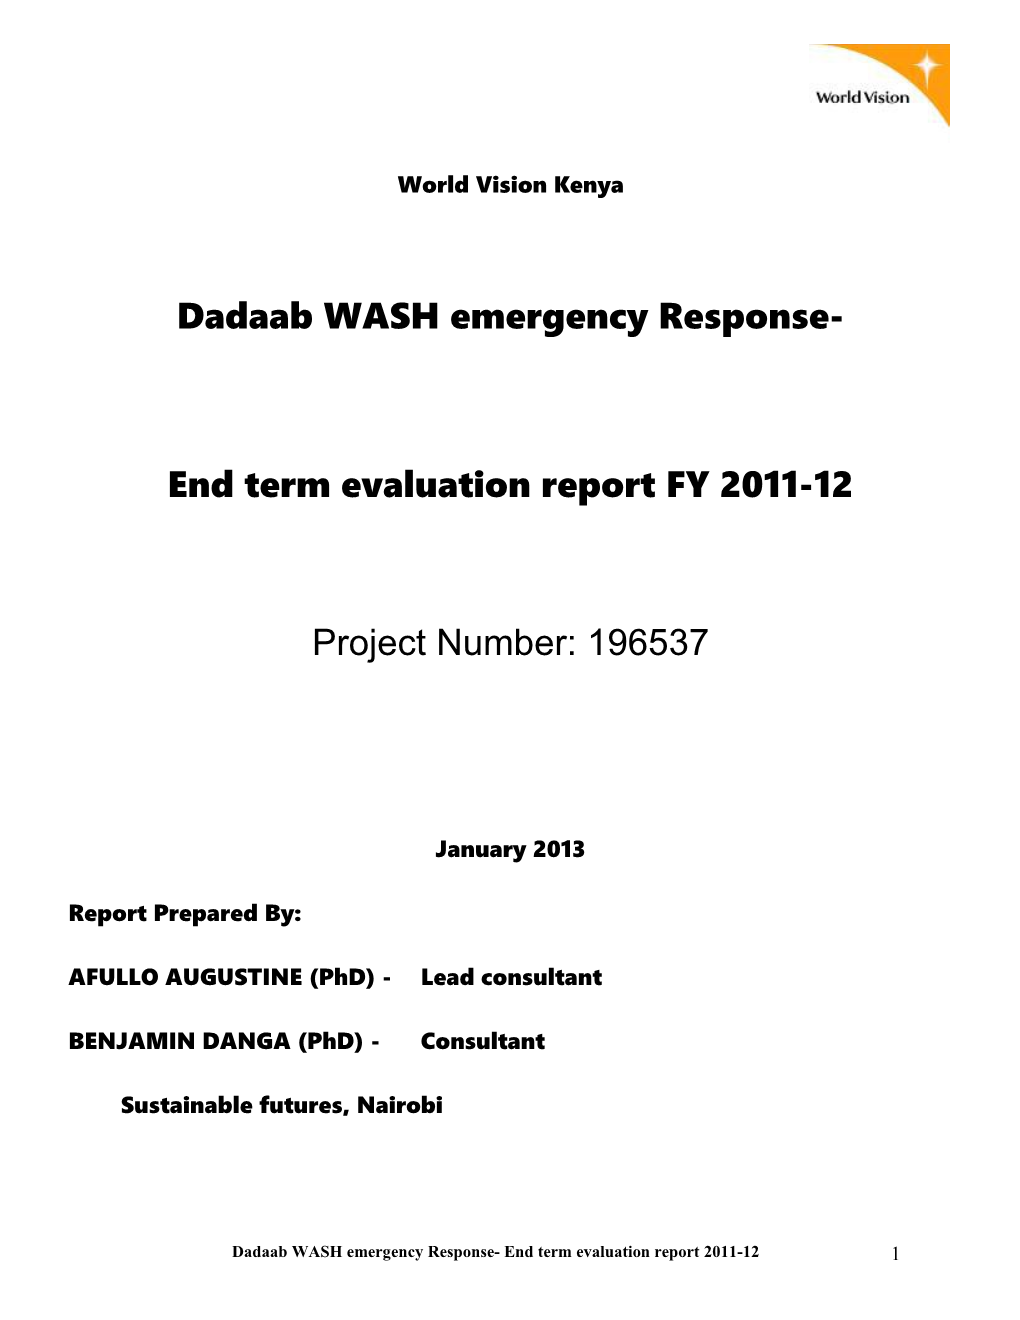 Dadaab WASH Emergency Response